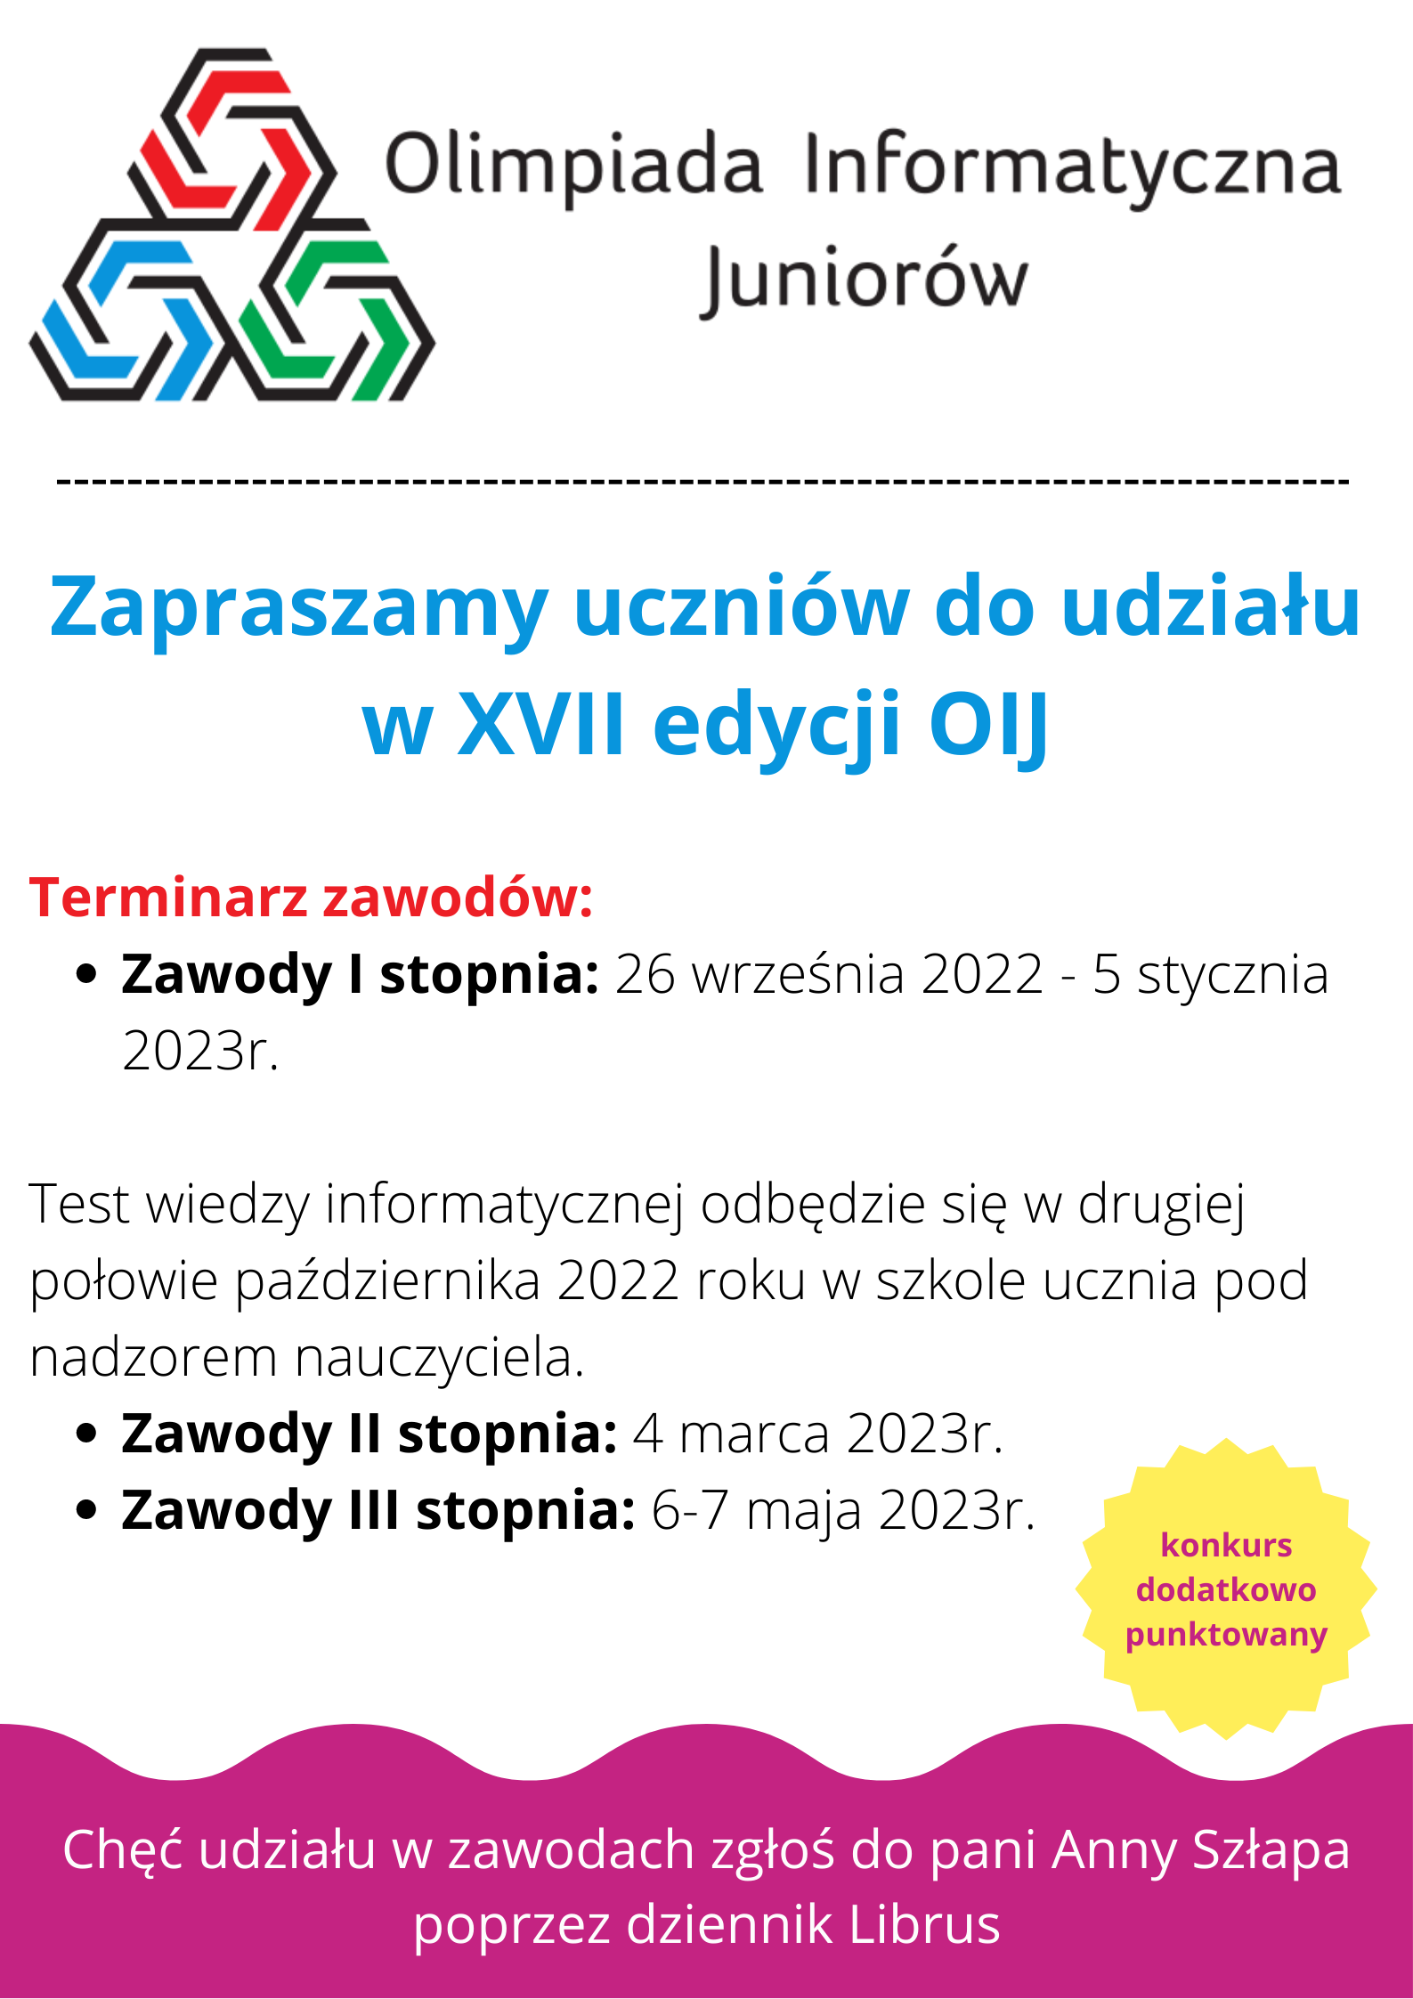 Plakat informacyjny o konkursie Olimpiada Informatyczna Juniorów 2022